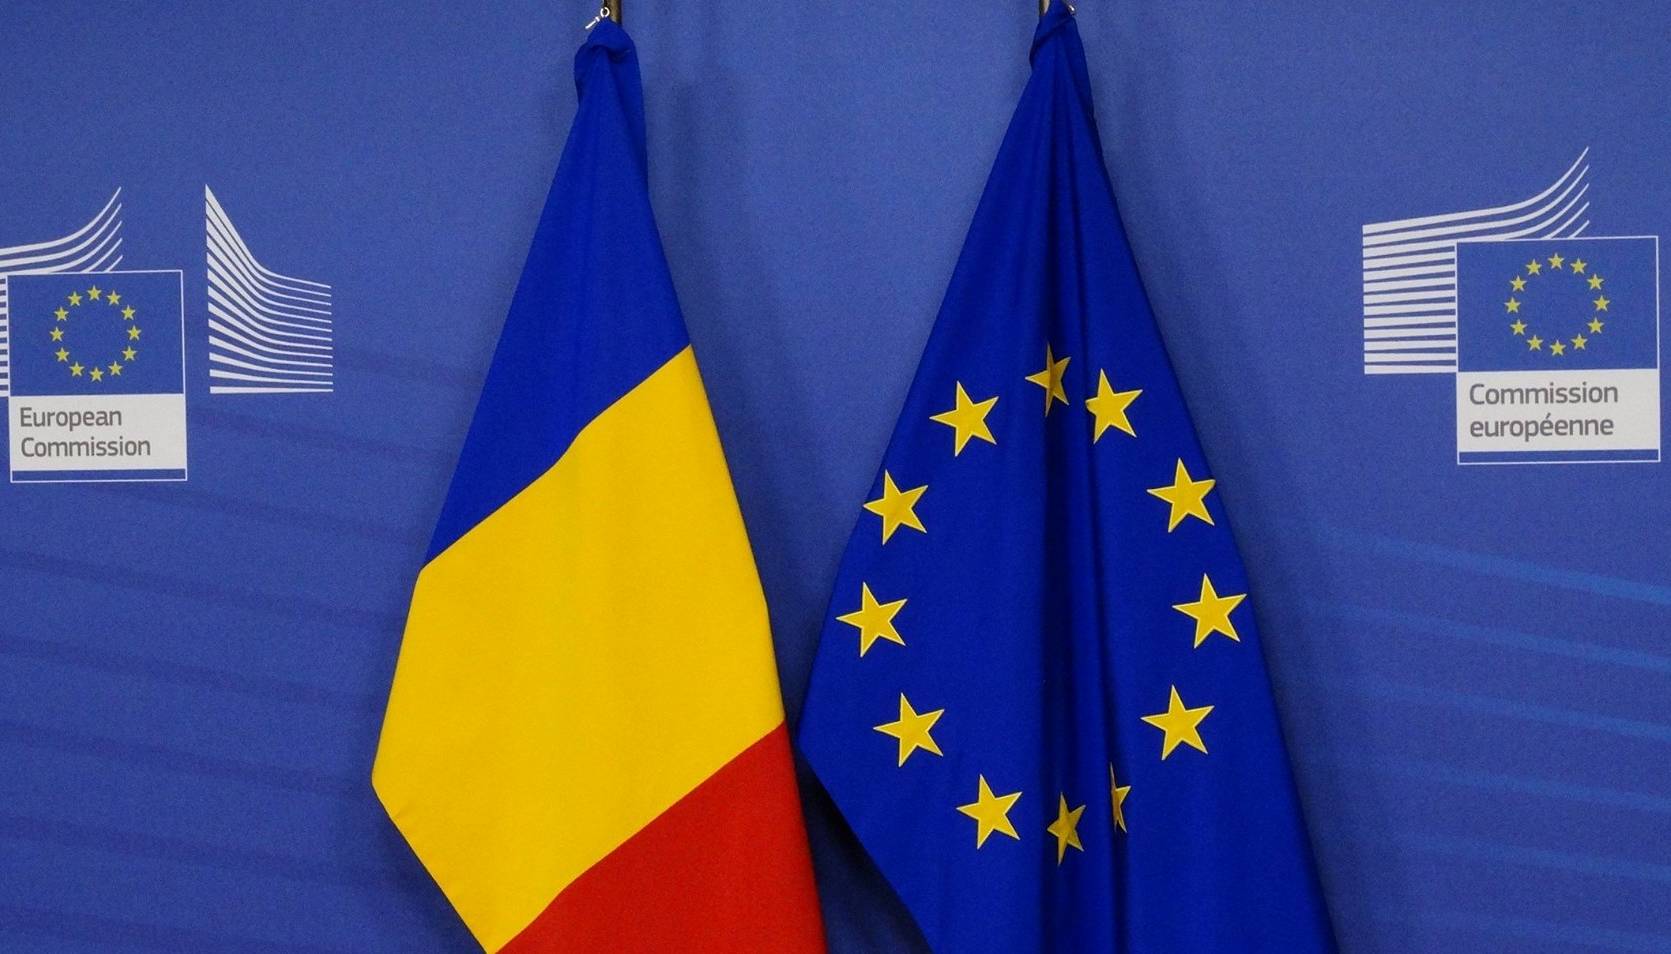 De Europese Commissie verleent nieuwe financiële steun aan de Republiek Moldavië